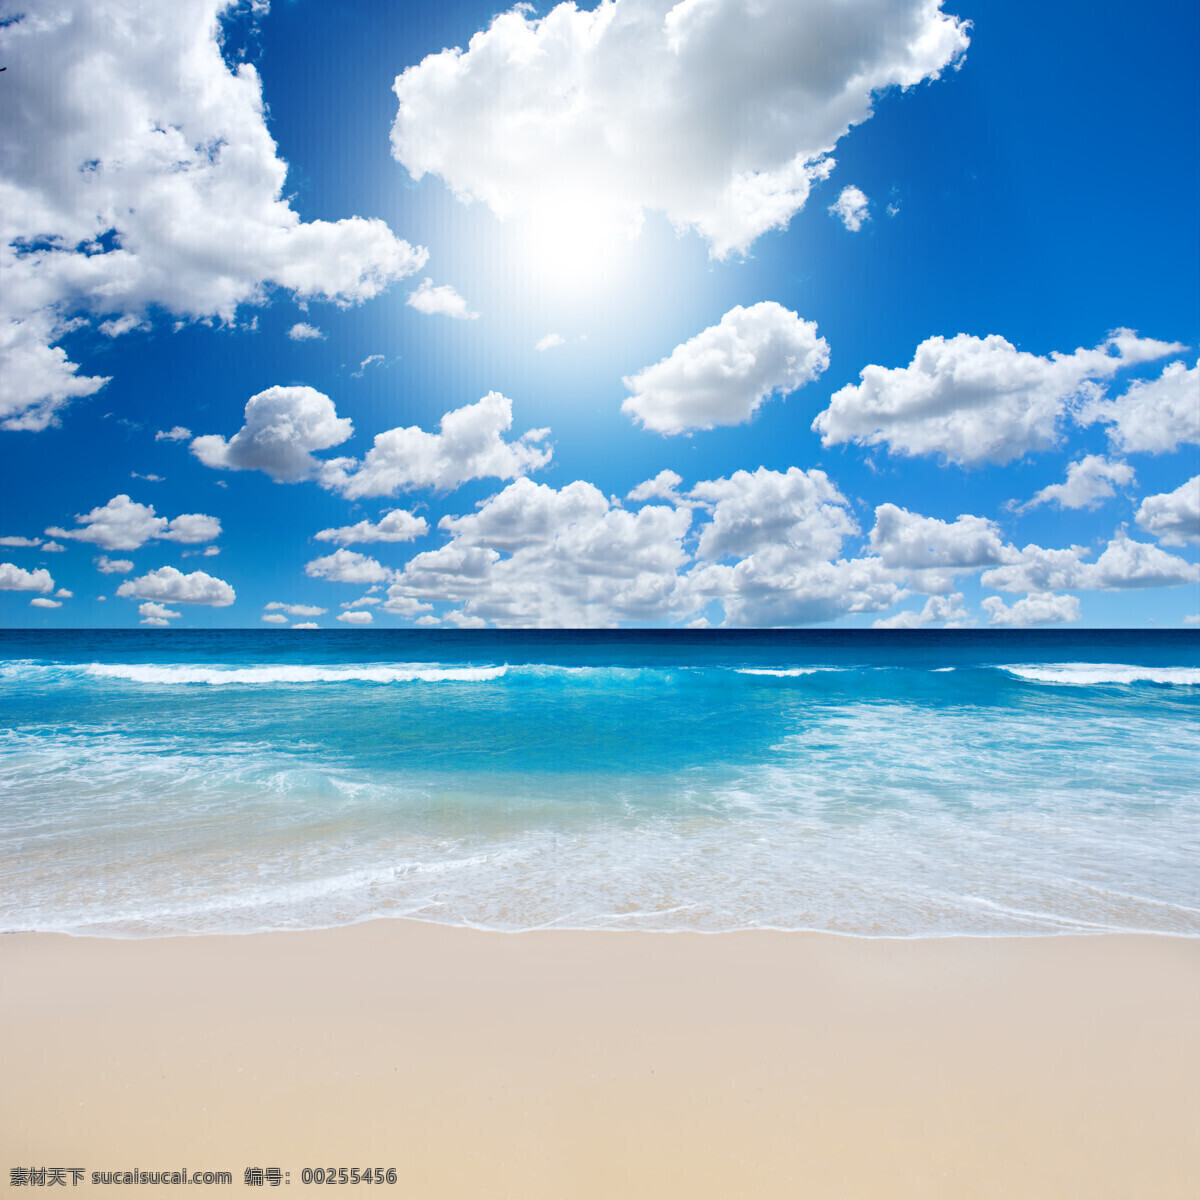 沙滩海岸 阳光沙滩 海滩 美景 度假 阳光 自然风光 大自然 风景 天空 云朵 自然风光壁纸 自然景观 自然风景 清澈水面